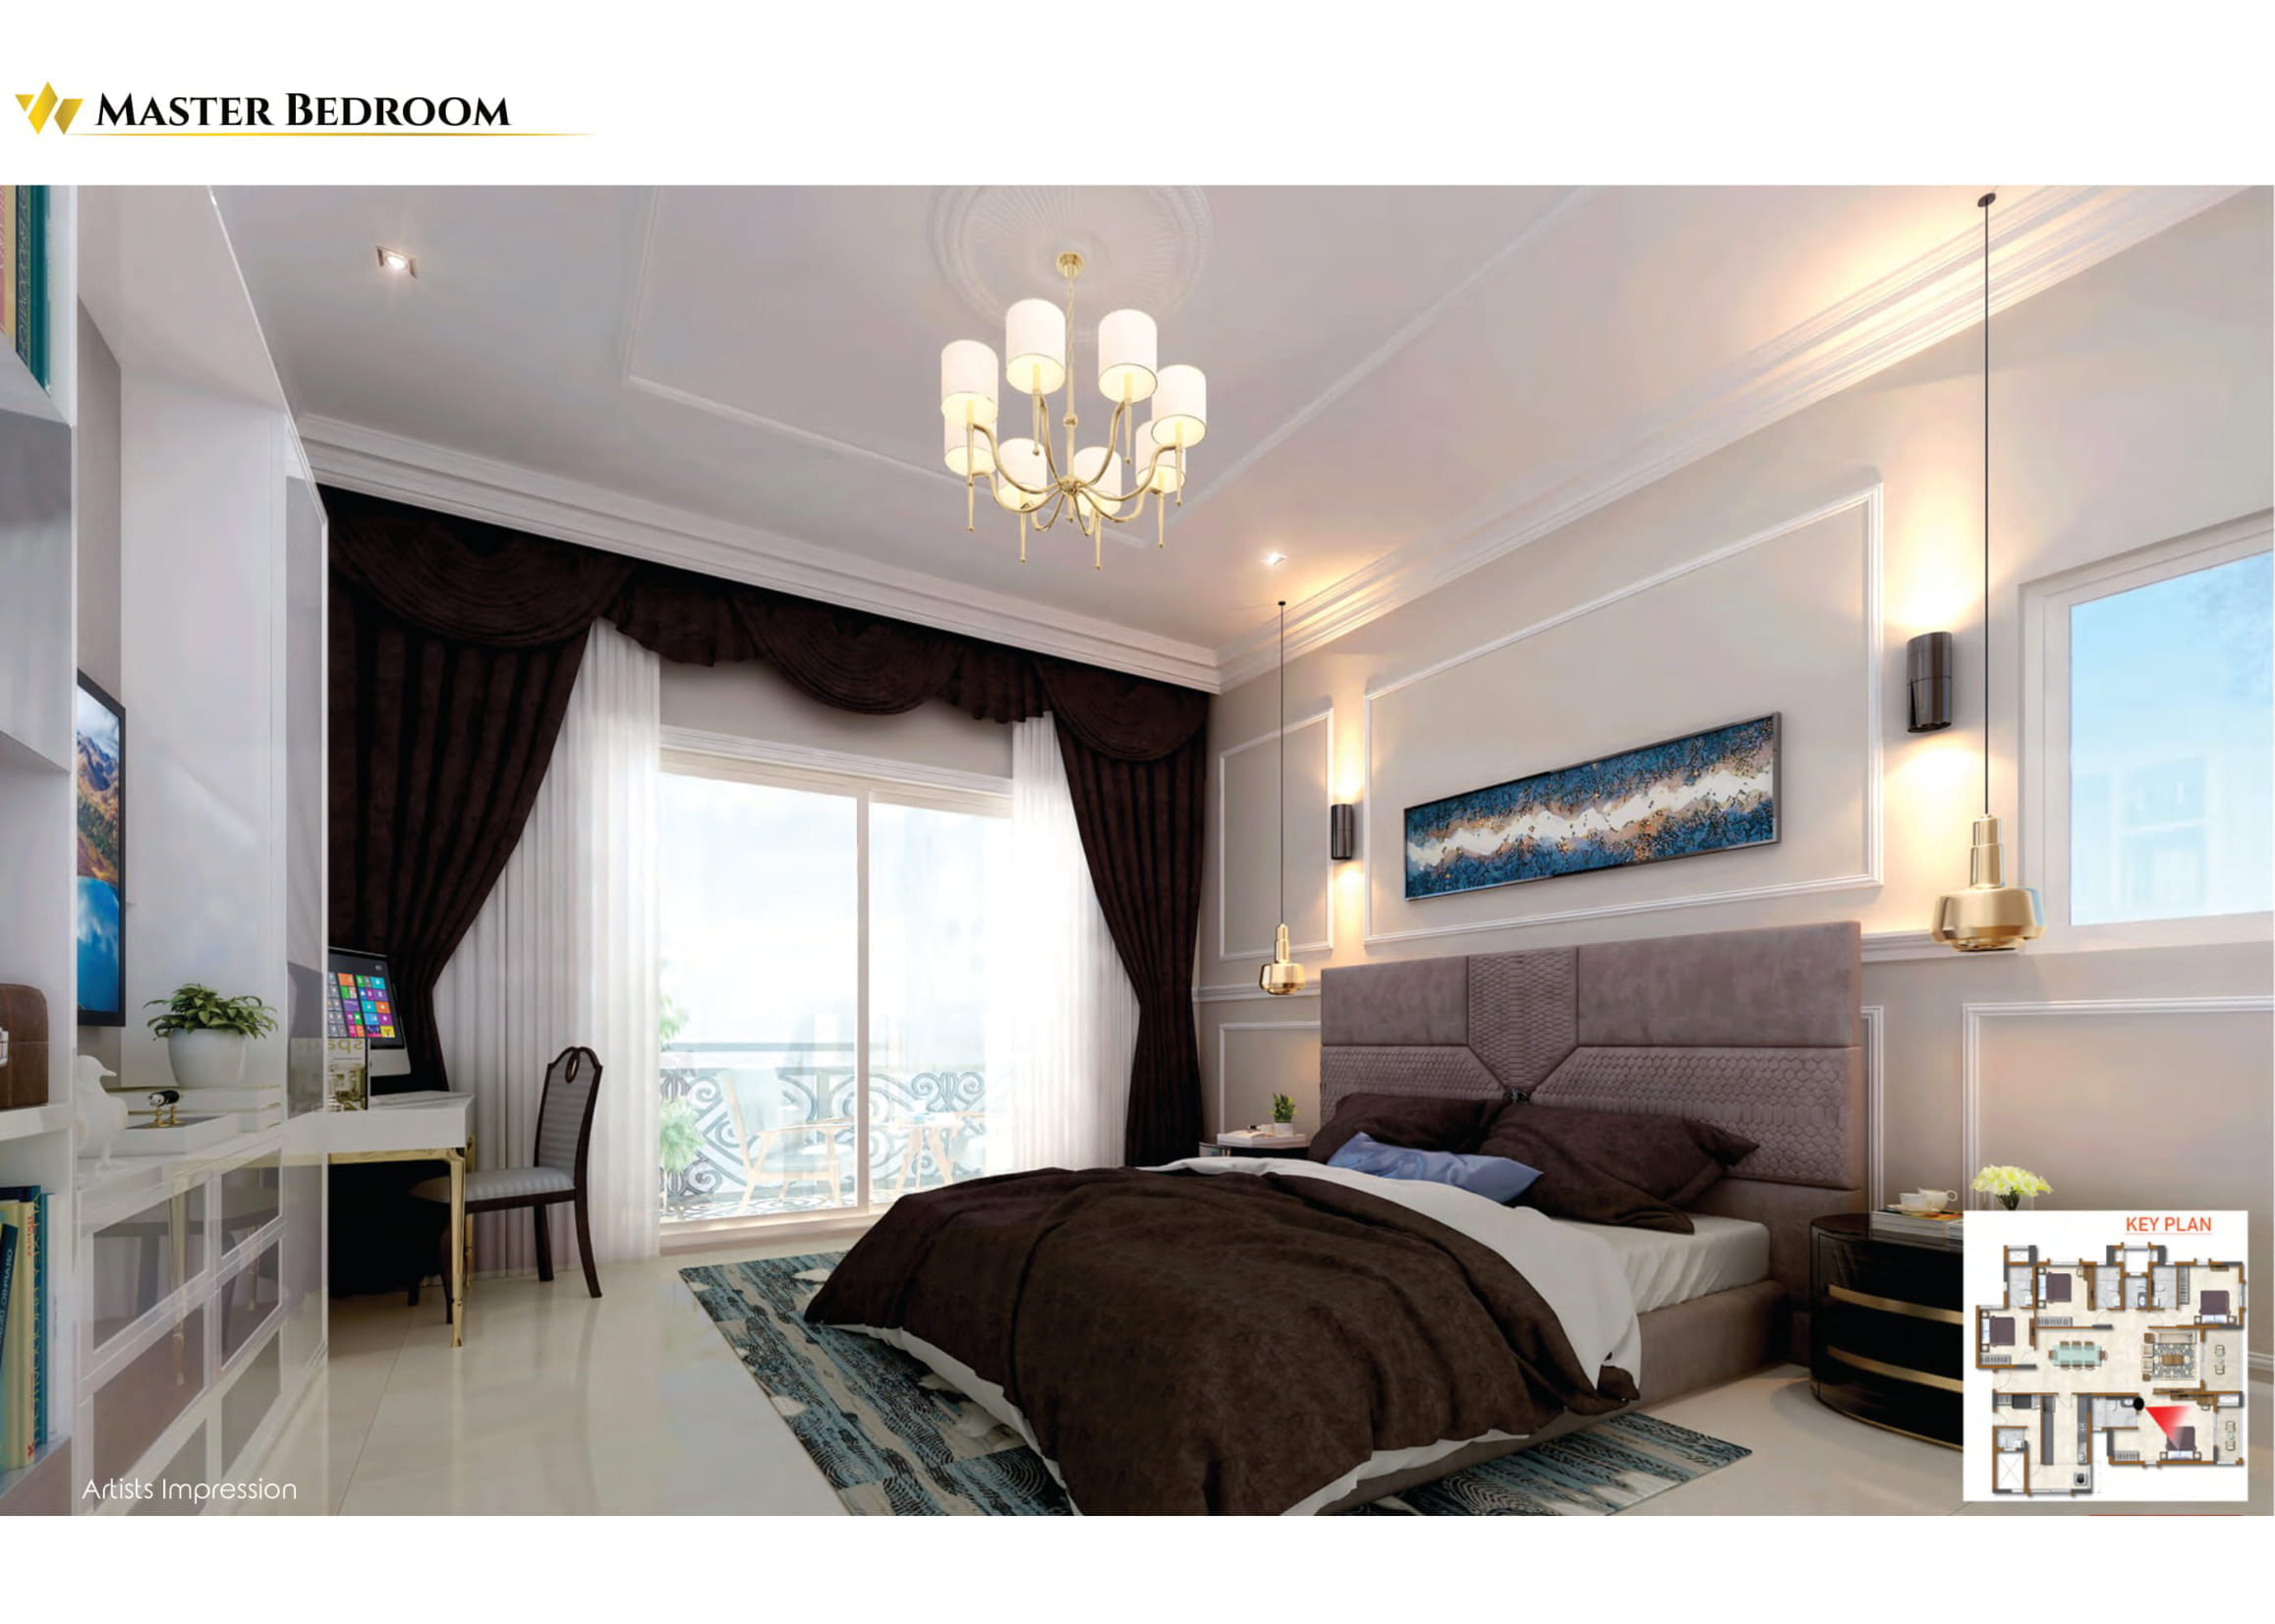 Prestige Waterford Master Bedroom